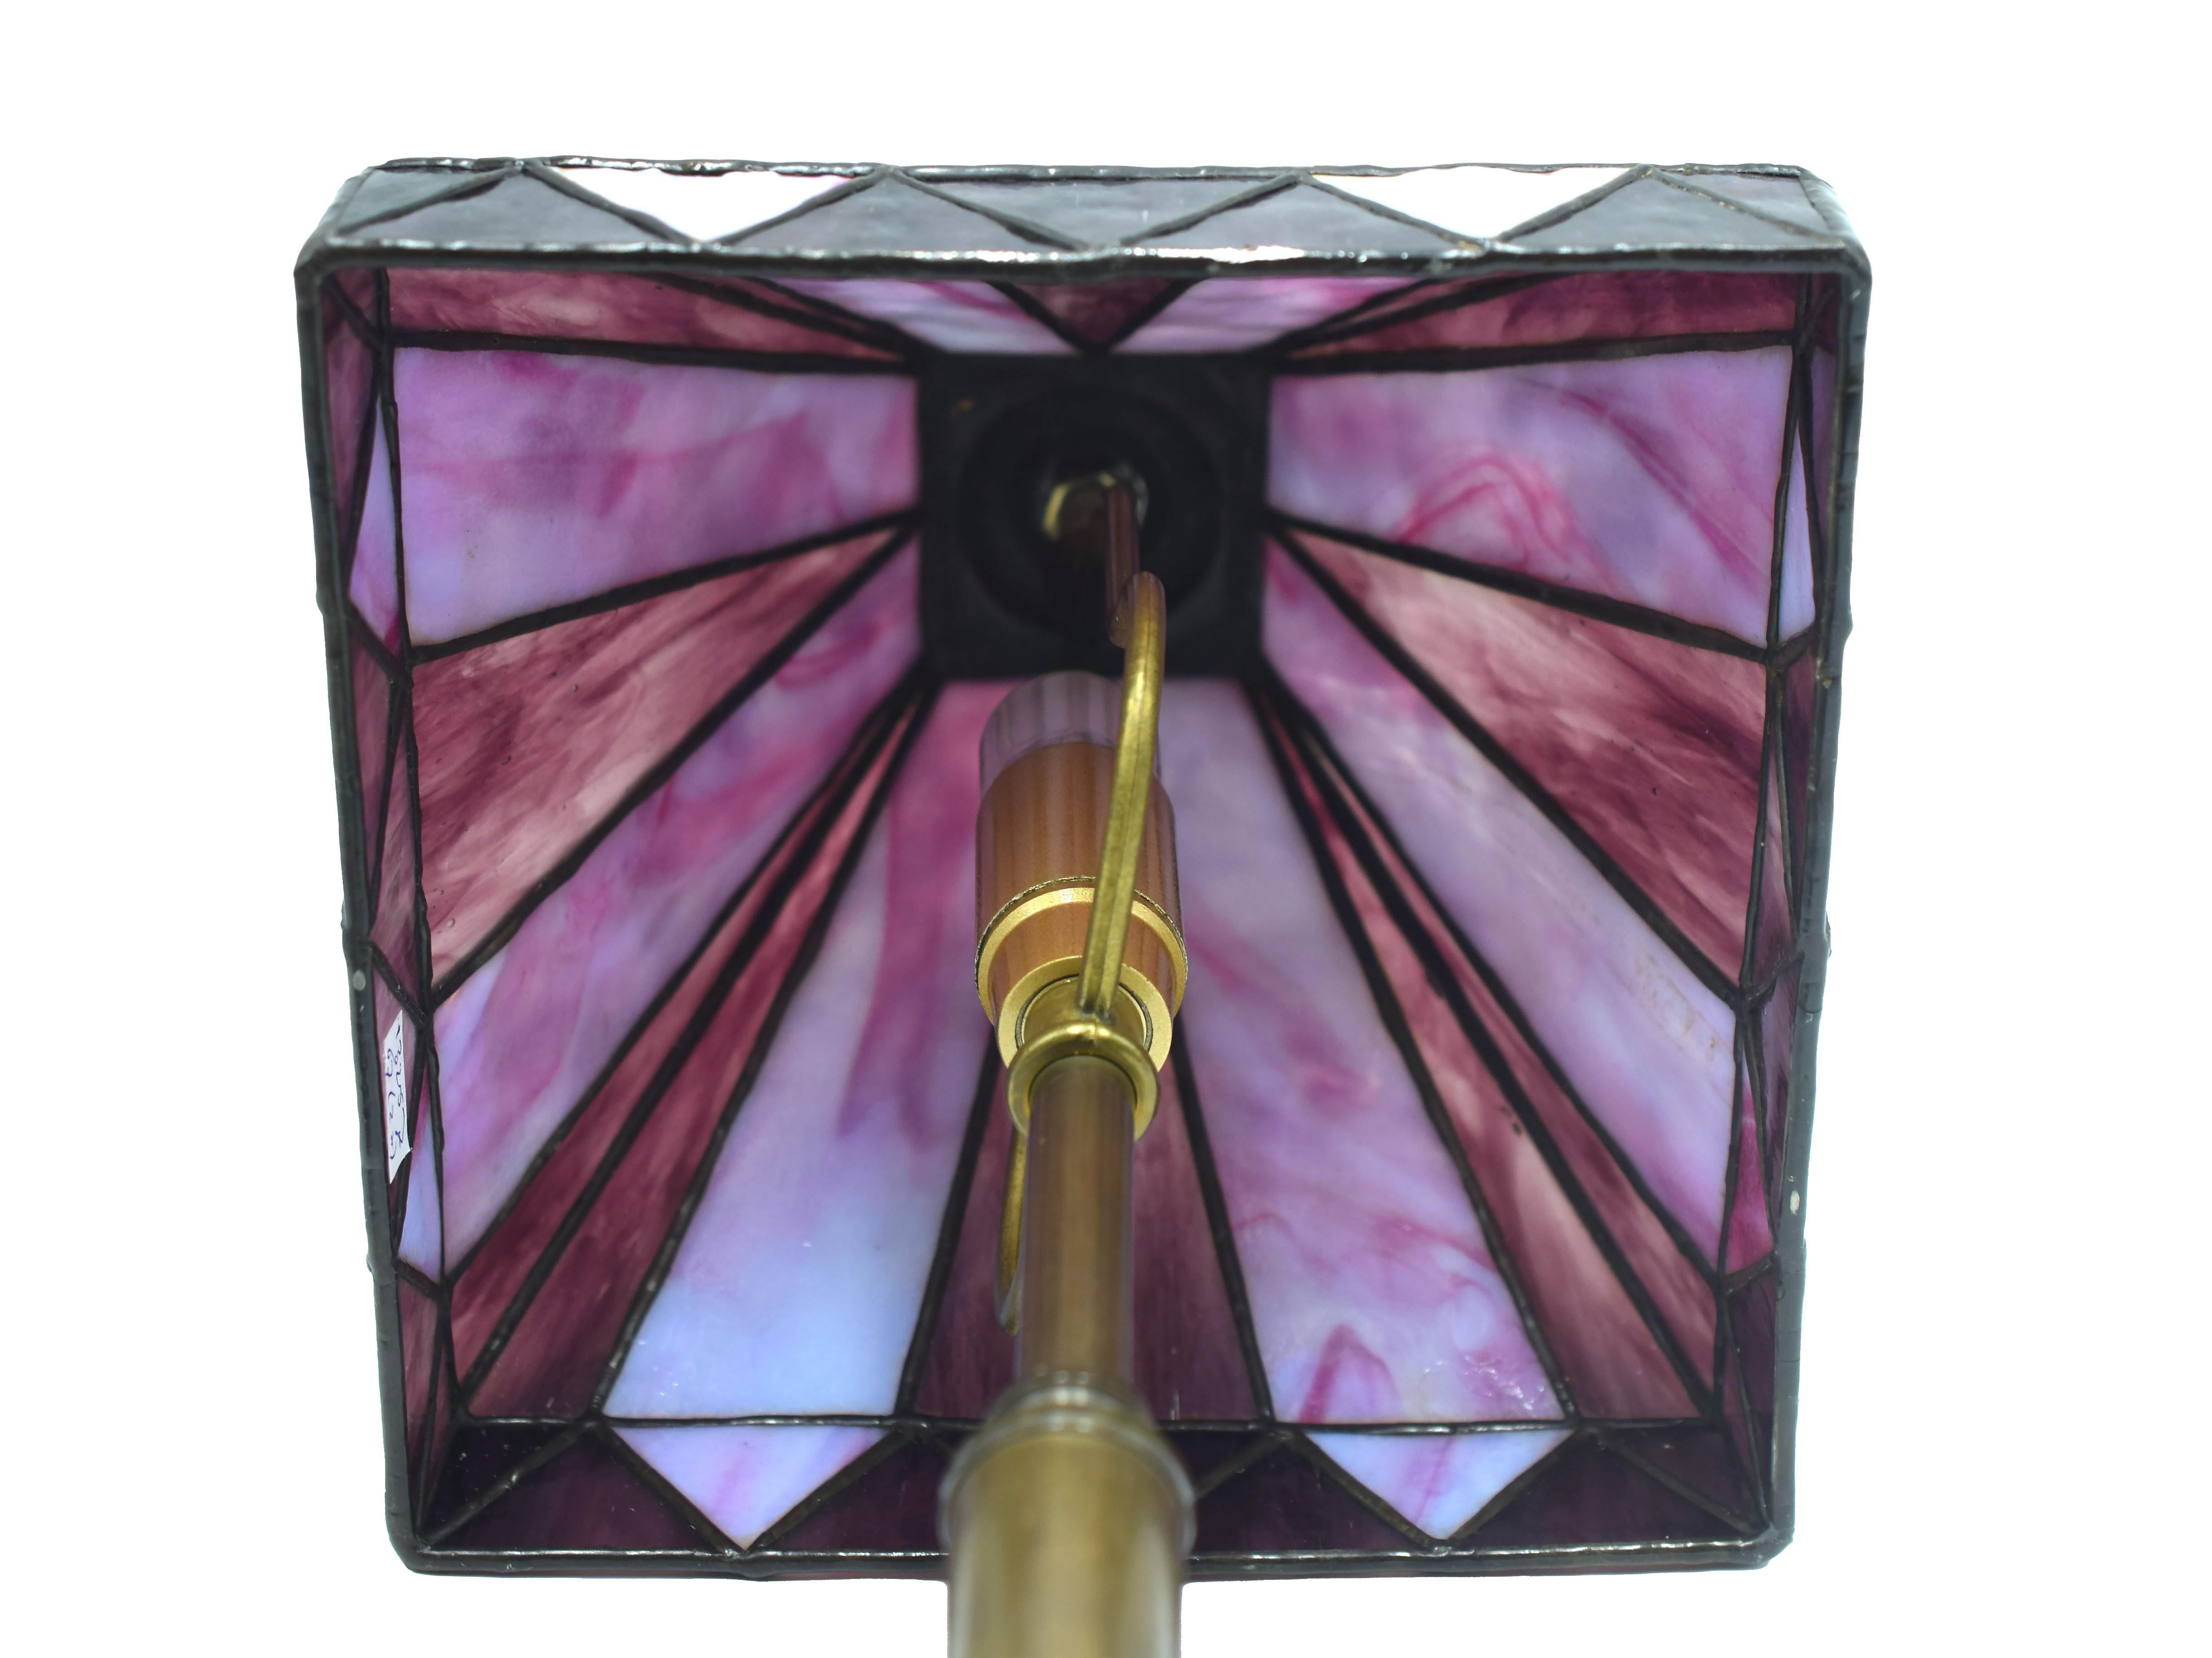 Cette lampe de table de style Tiffany est une élégante lampe design fabriquée au cours de la seconde moitié du XXe siècle, probablement à la fin des années 1950.

Design/One caractérisé par une base en laiton et un superbe abat-jour en violet et